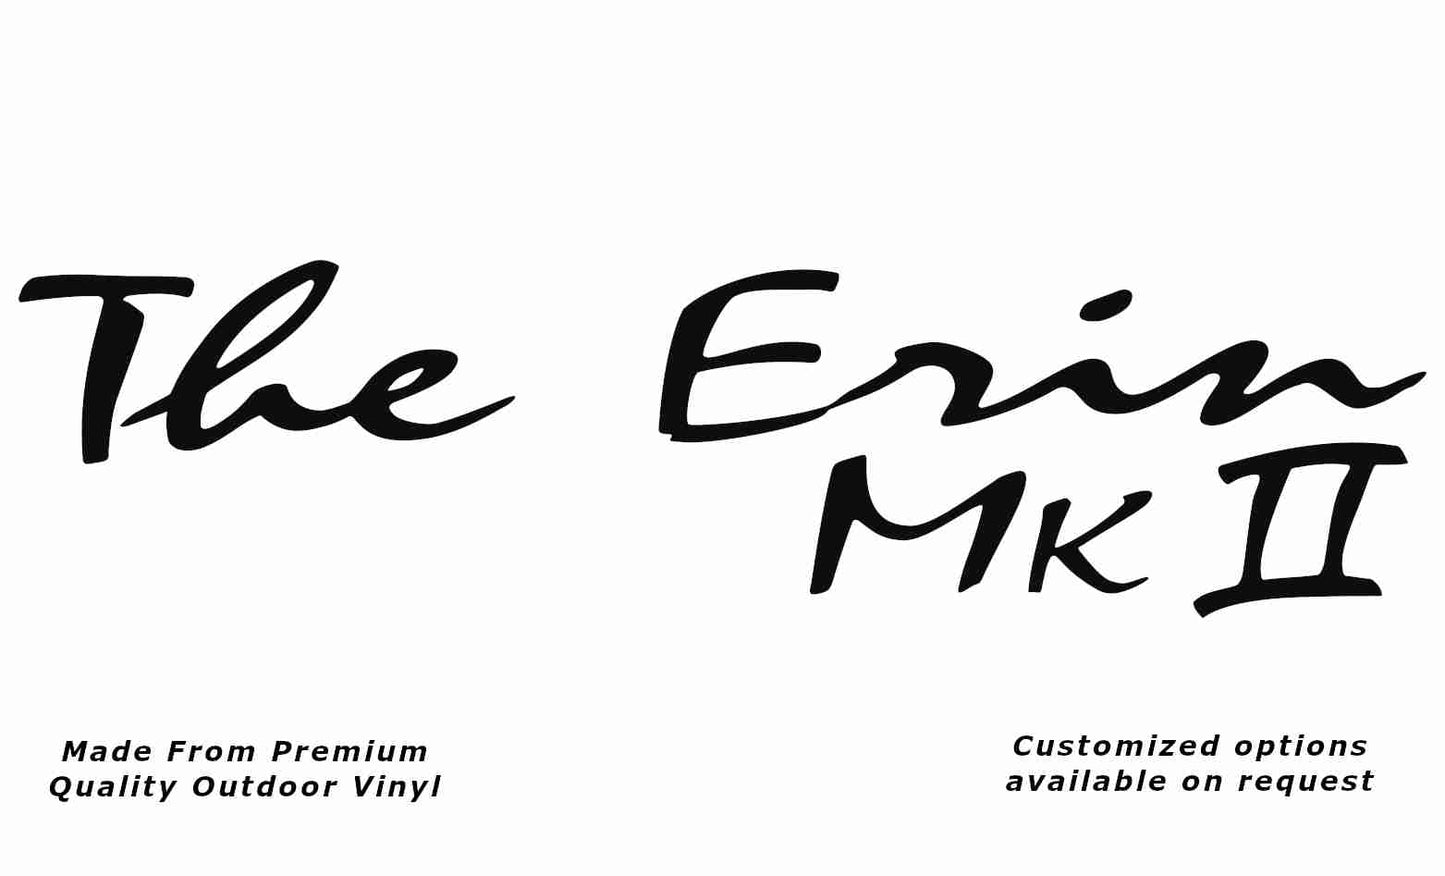 Avan the erin mk ii caravan replacement vinyl decal sticker in black.